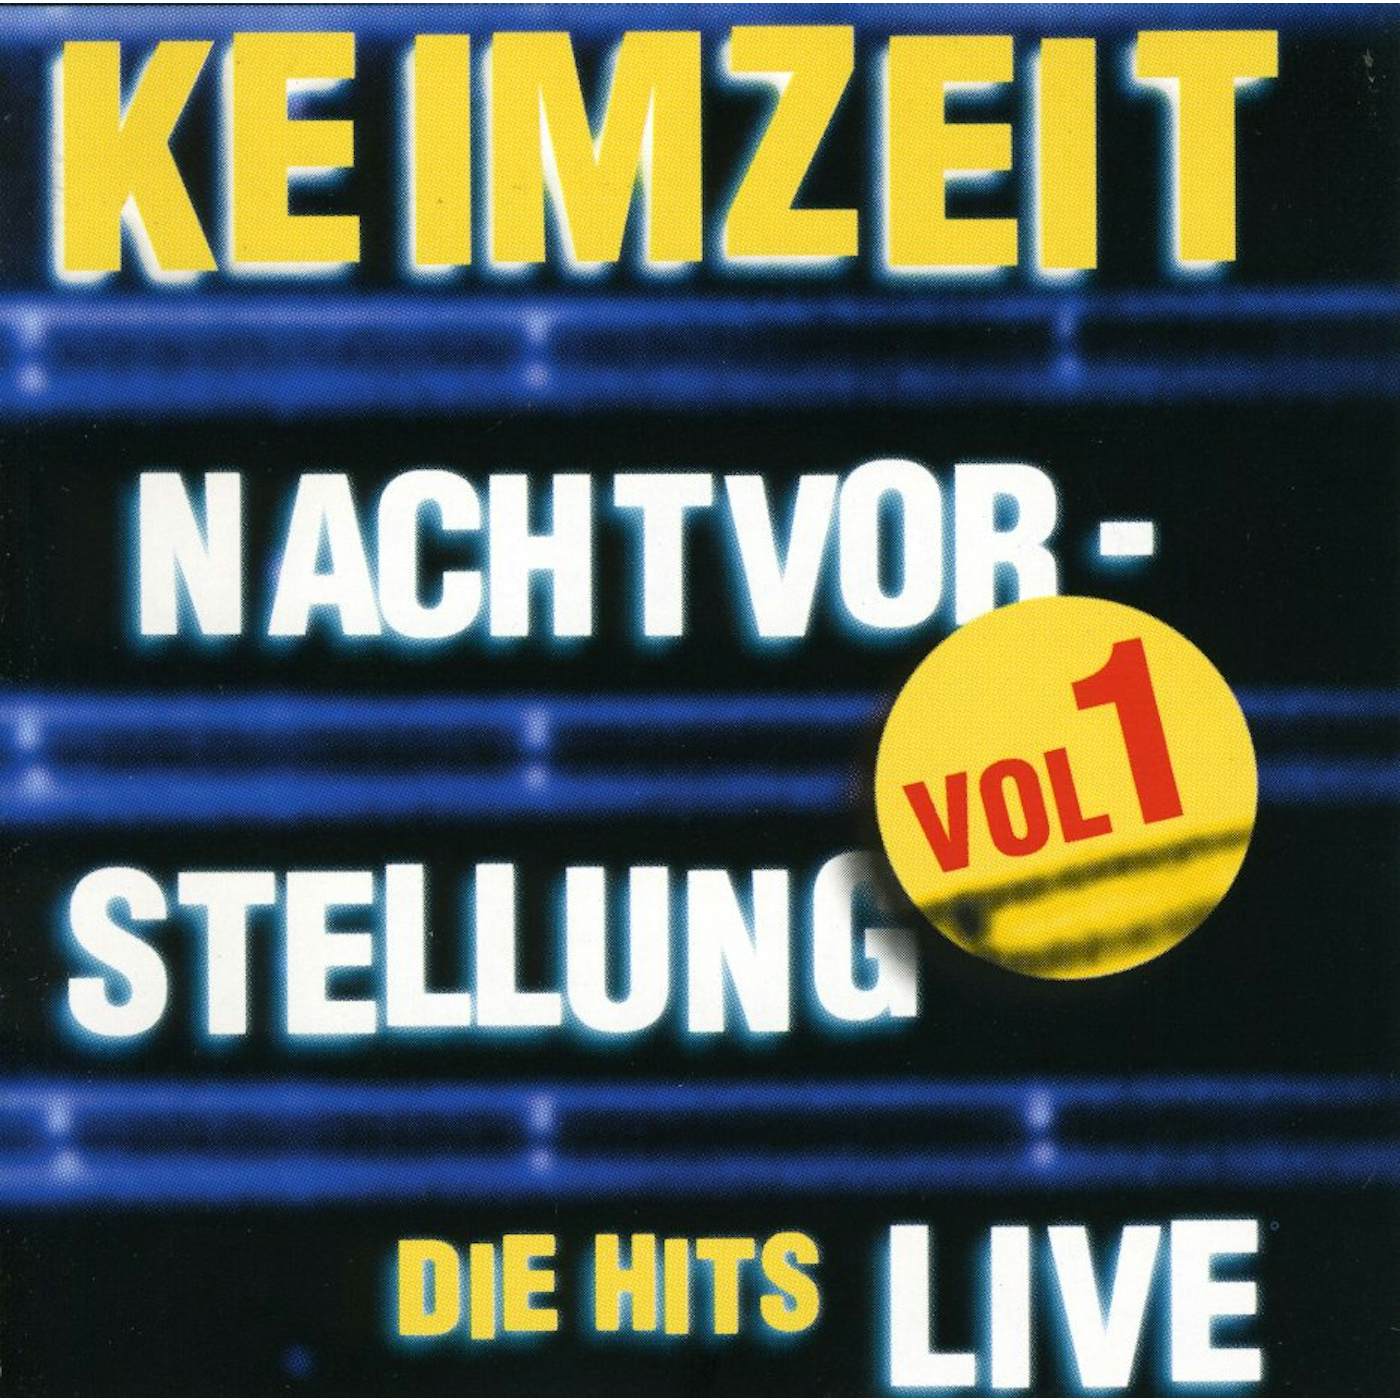 Keimzeit NACHTVORSTELLUNG DIE HITS LIVE VOL. 1 CD